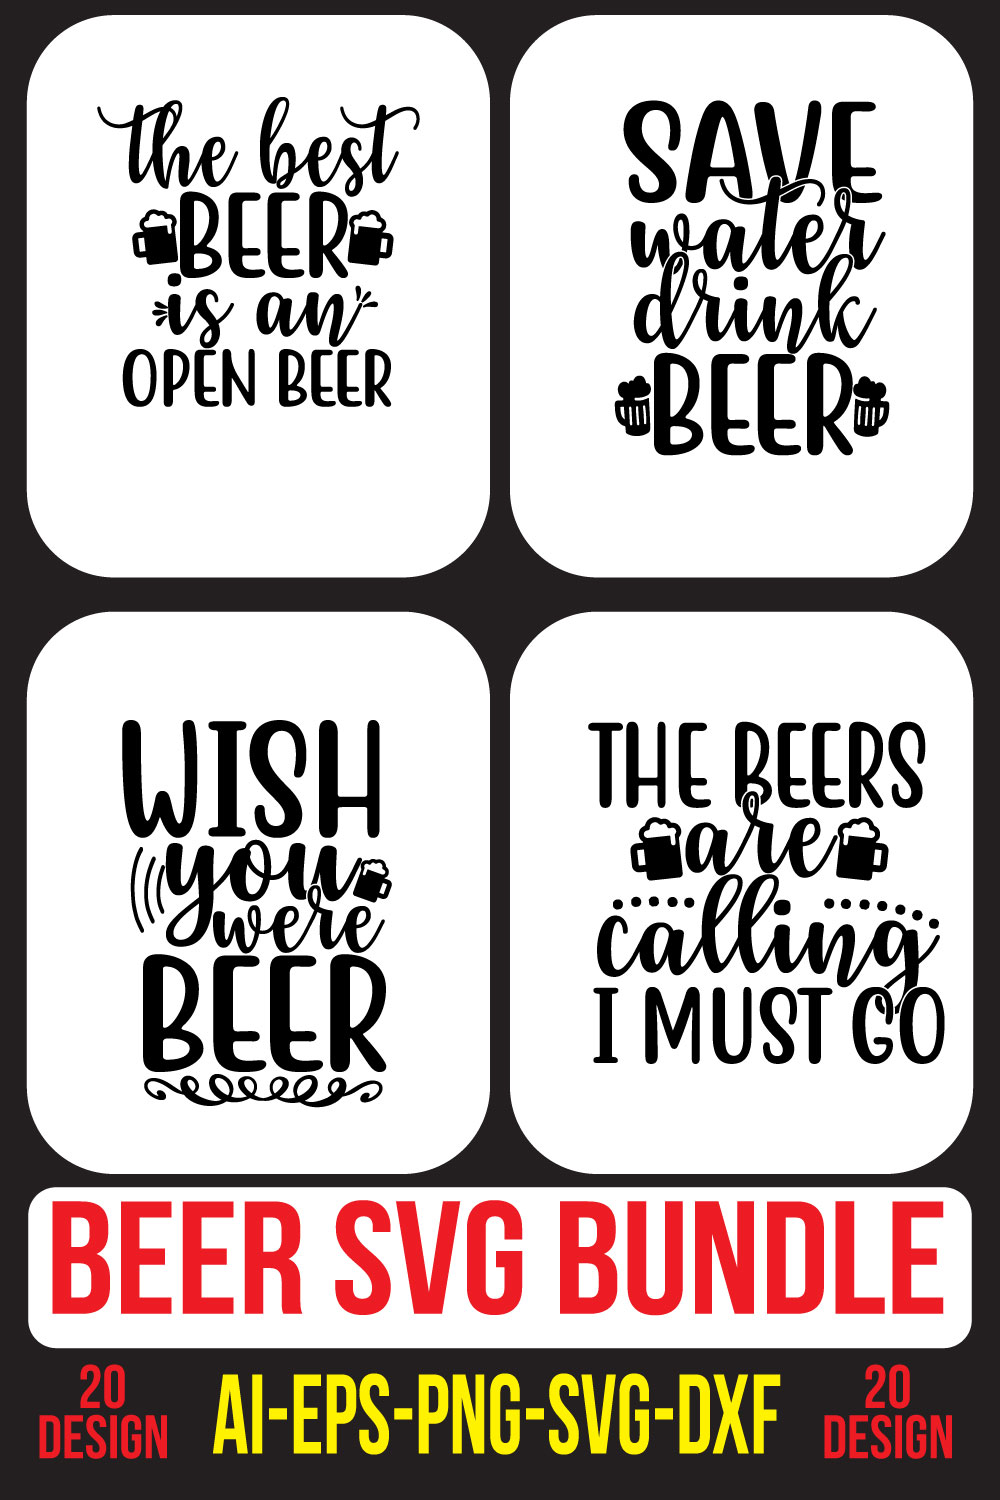 Beer SVG Bundle pinterest preview image.